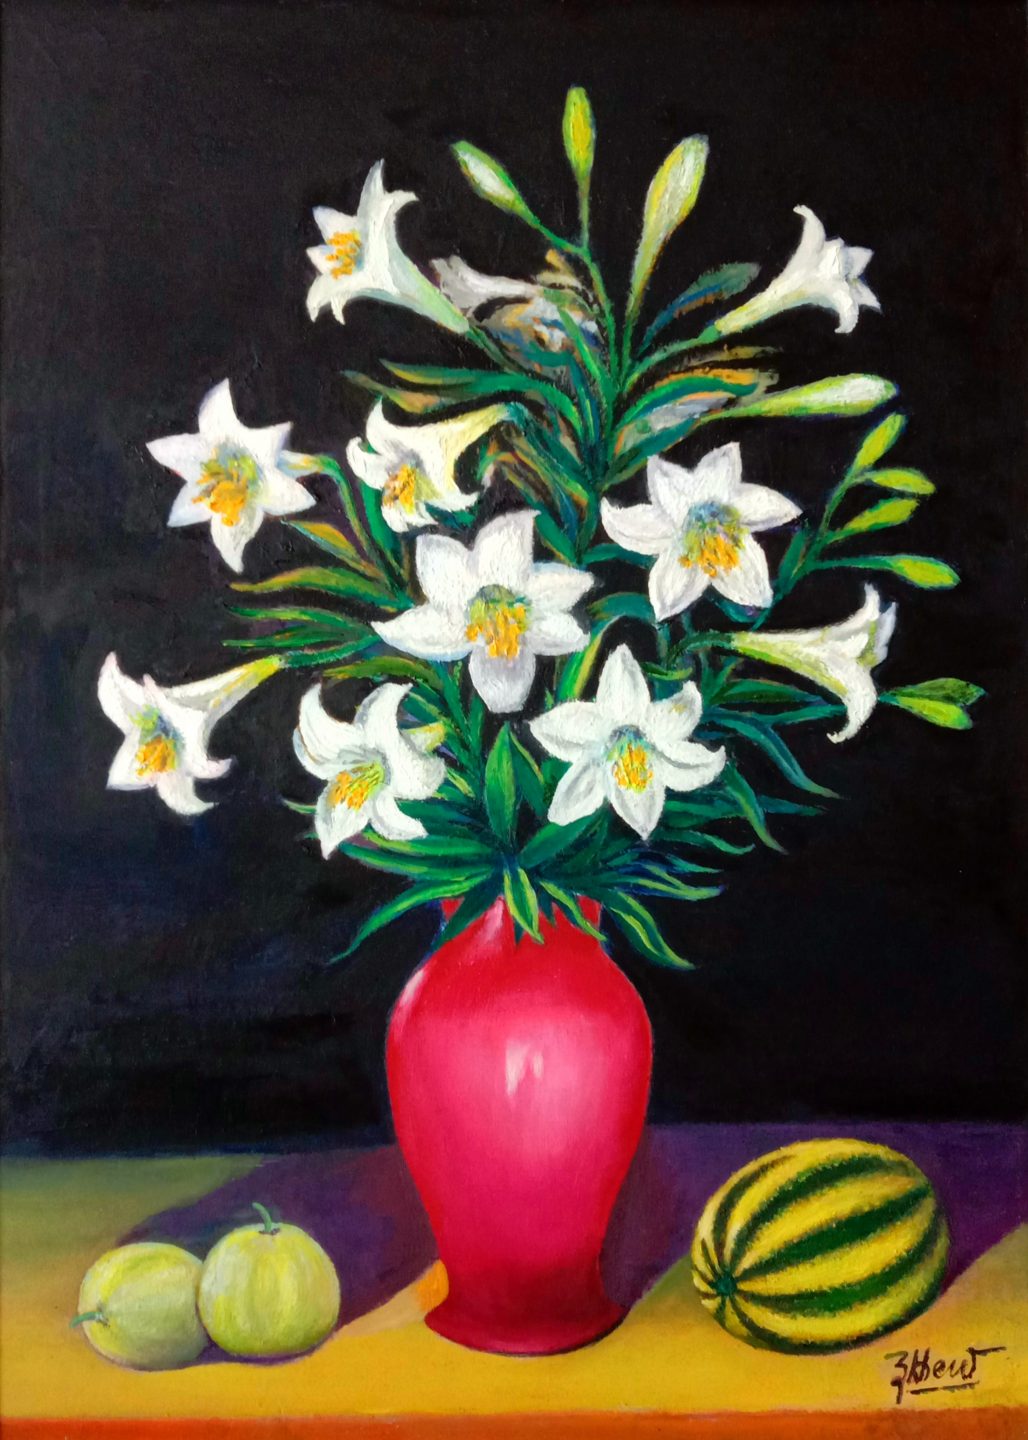 Hoa Loa Kèn trắng: Hoa Loa Kèn trắng - một loại hoa đẹp và thanh lịch, được xếp vào hàng đầu trong danh sách những loại hoa được yêu thích nhất. Hãy thưởng thức những hình ảnh Hoa Loa Kèn trắng thật tuyệt đẹp và đặc sắc.